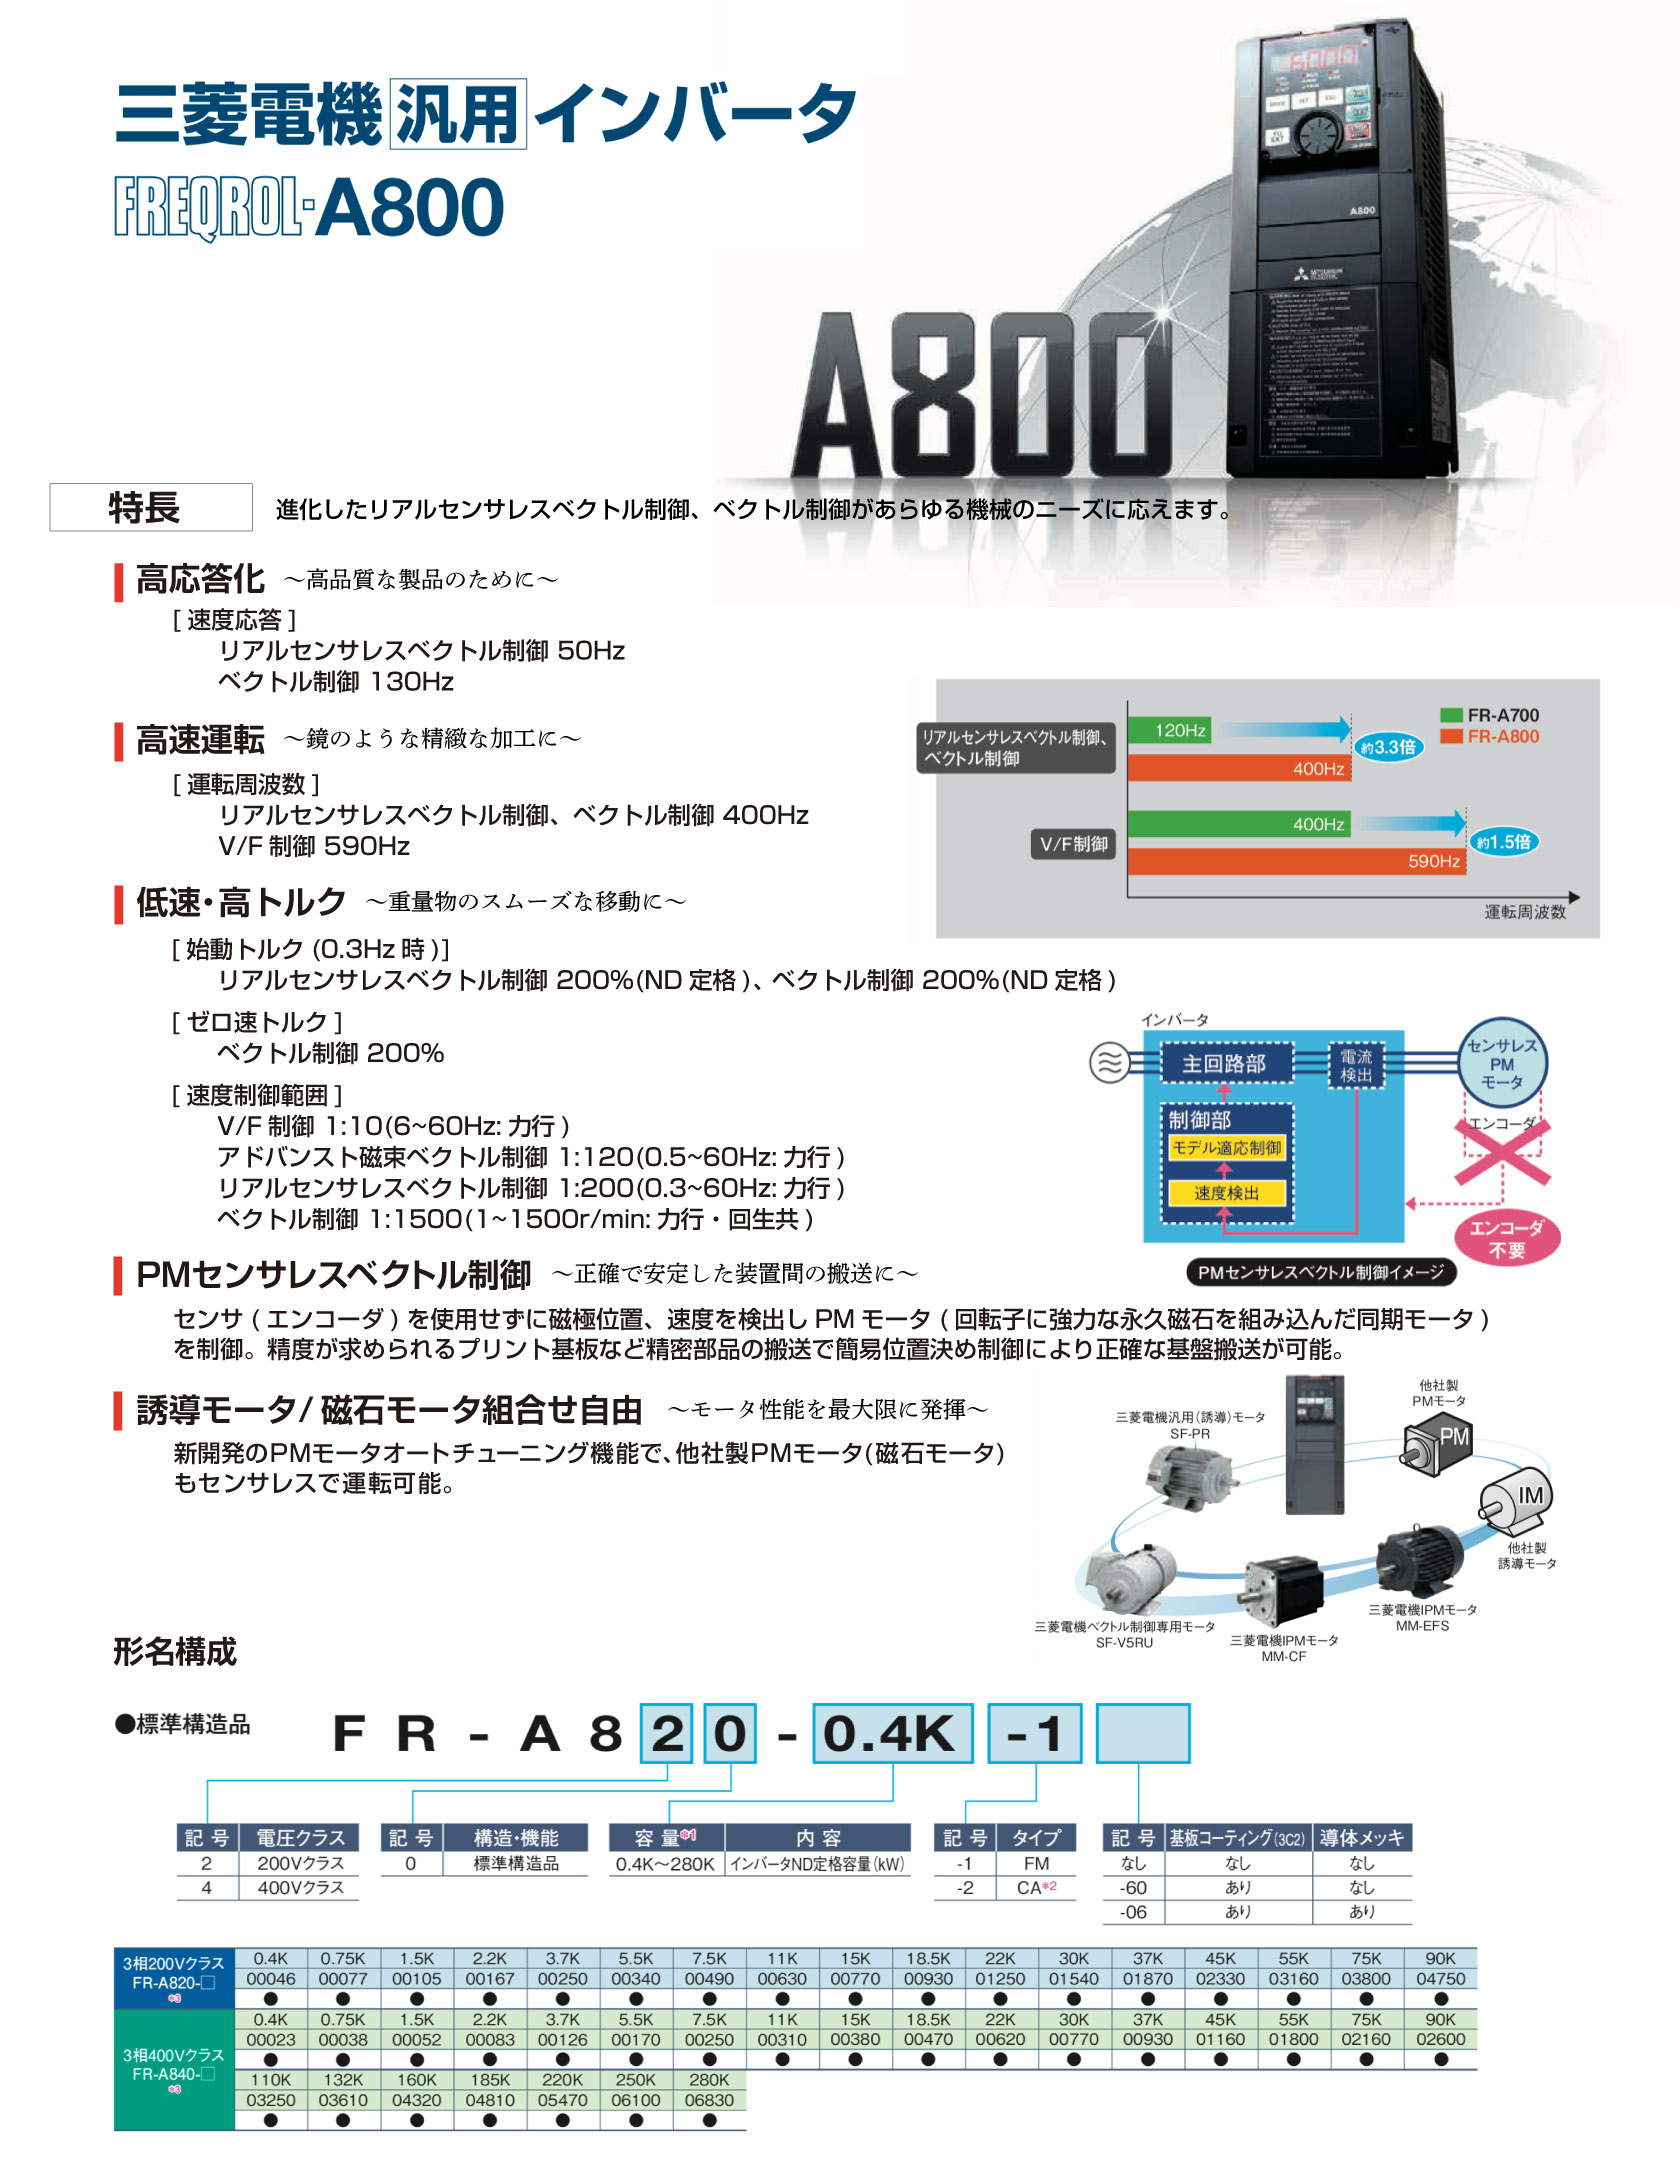 公式 FR-A820-22K-1 高機能 高性能インバータ FREQROL-A800シリーズ 三相200V